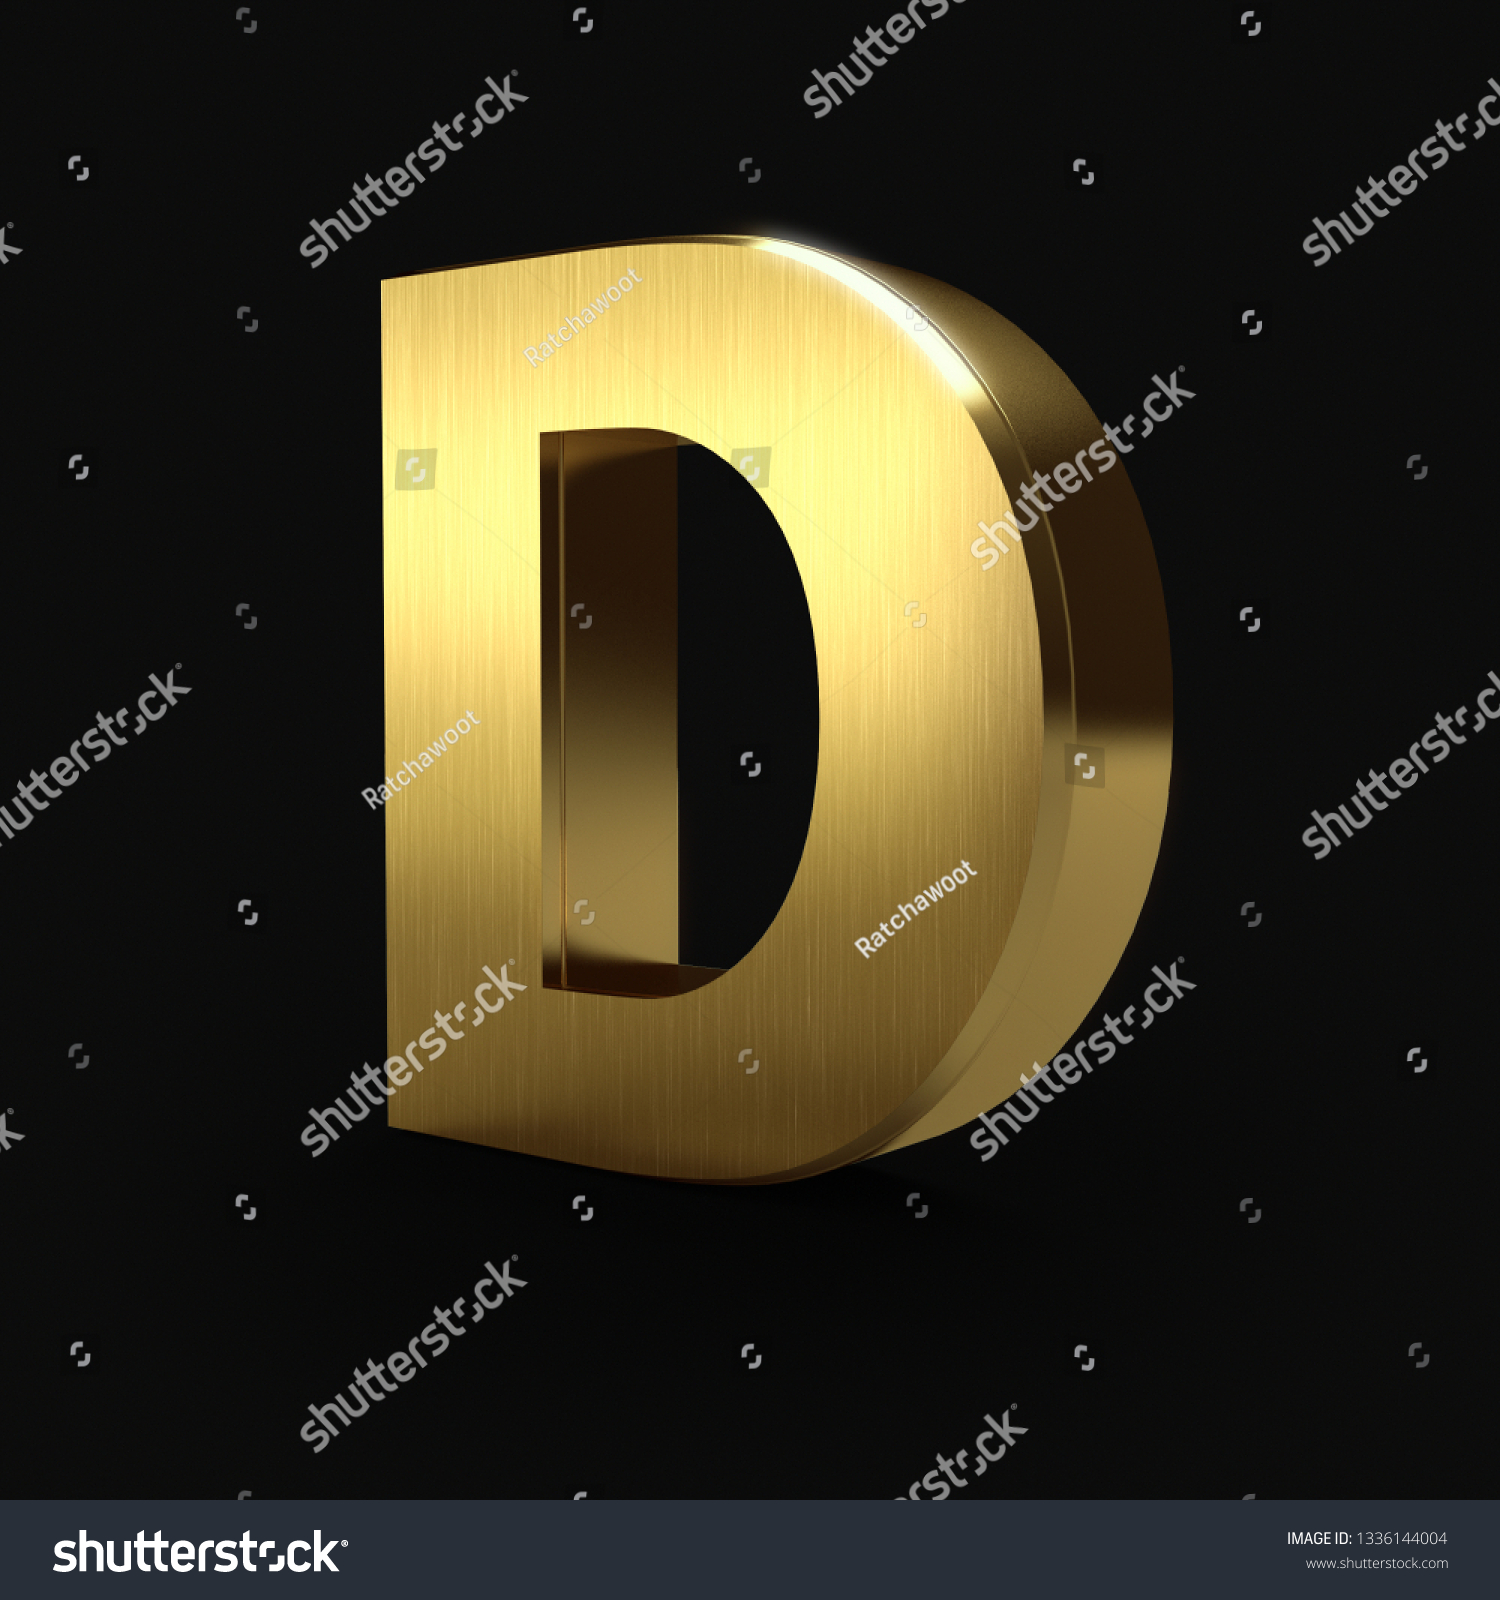 3d Golden Alphabet Letter D 3d Stock Illustration 1336144004 | Shutterstock